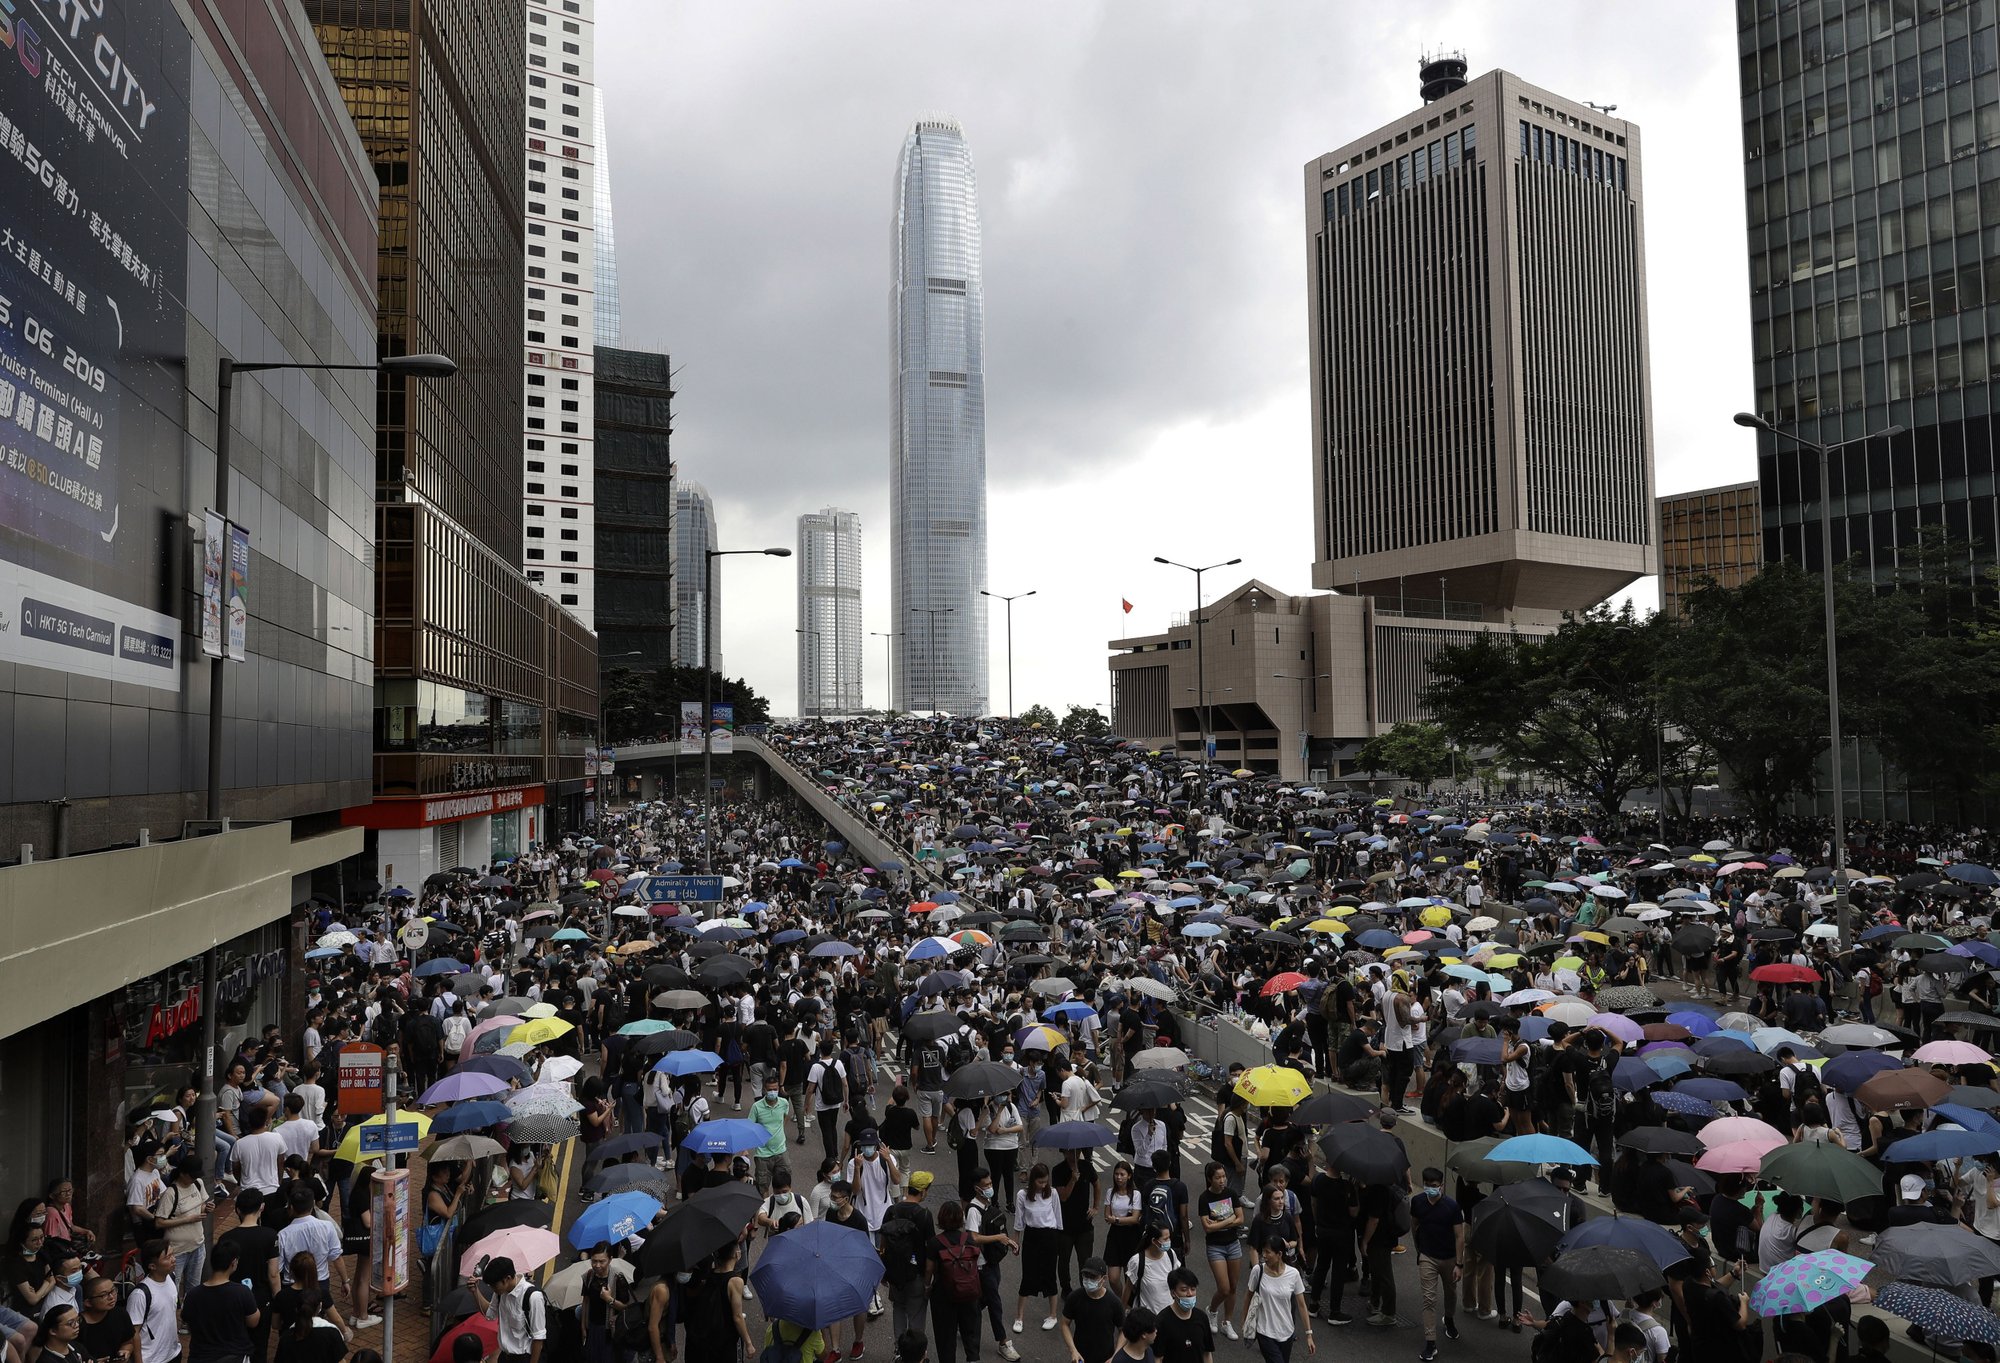 [사진] 홍콩 도주범 조례 개정안에 대한 반대시위를 위하여 시민들이 거리에 나와있는 모습 (Associated Press 제공 자료)